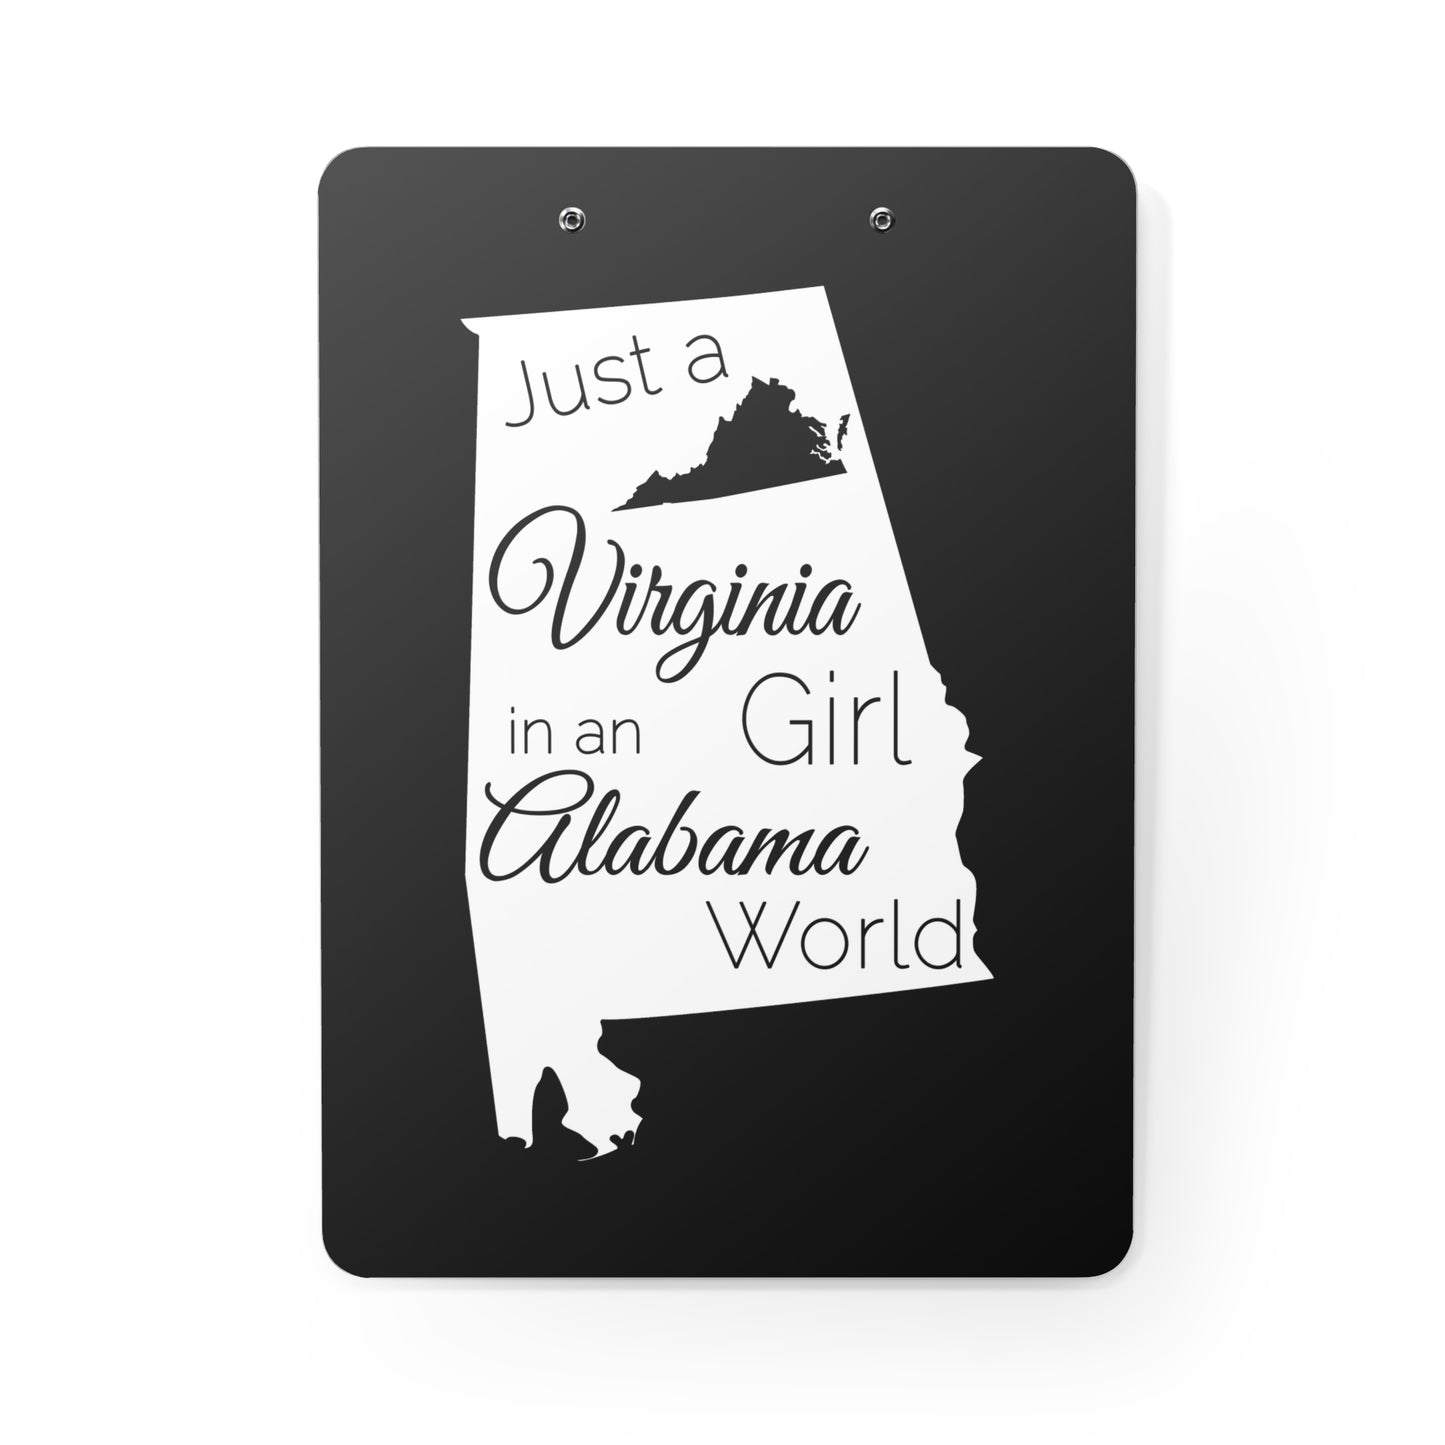 Just a Virginia Girl in an Alabama World Clipboard